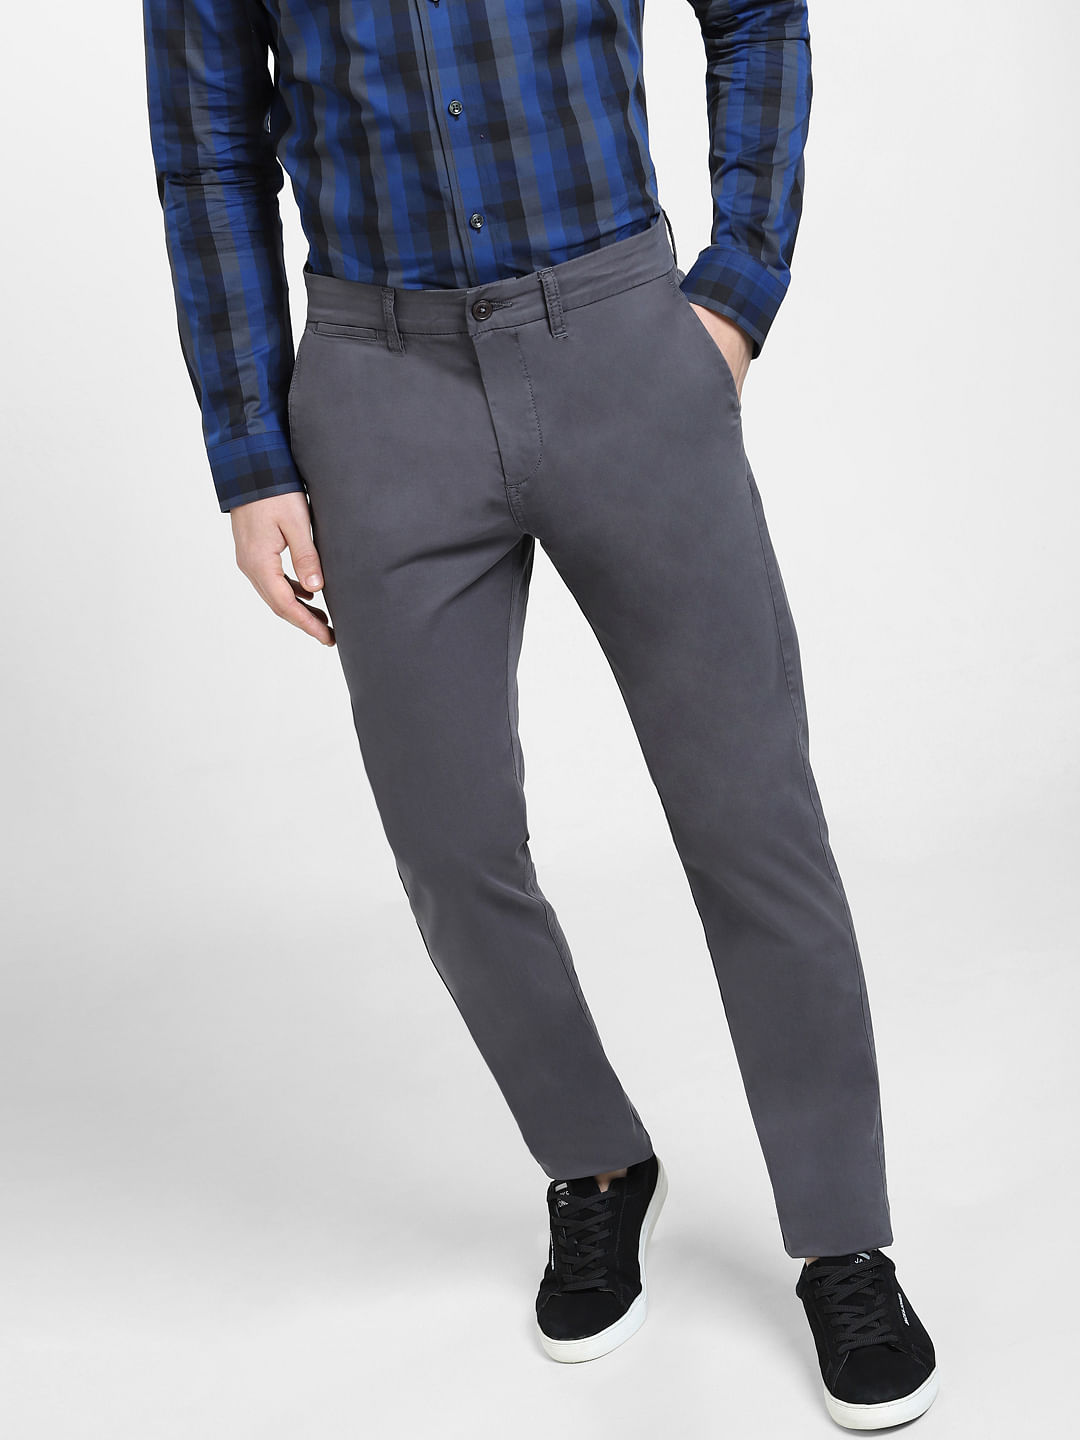 HUGO BOSS US-40R IT-56 men's suit pants trousers 100% wool check charc –  Jenifers Designer Closet